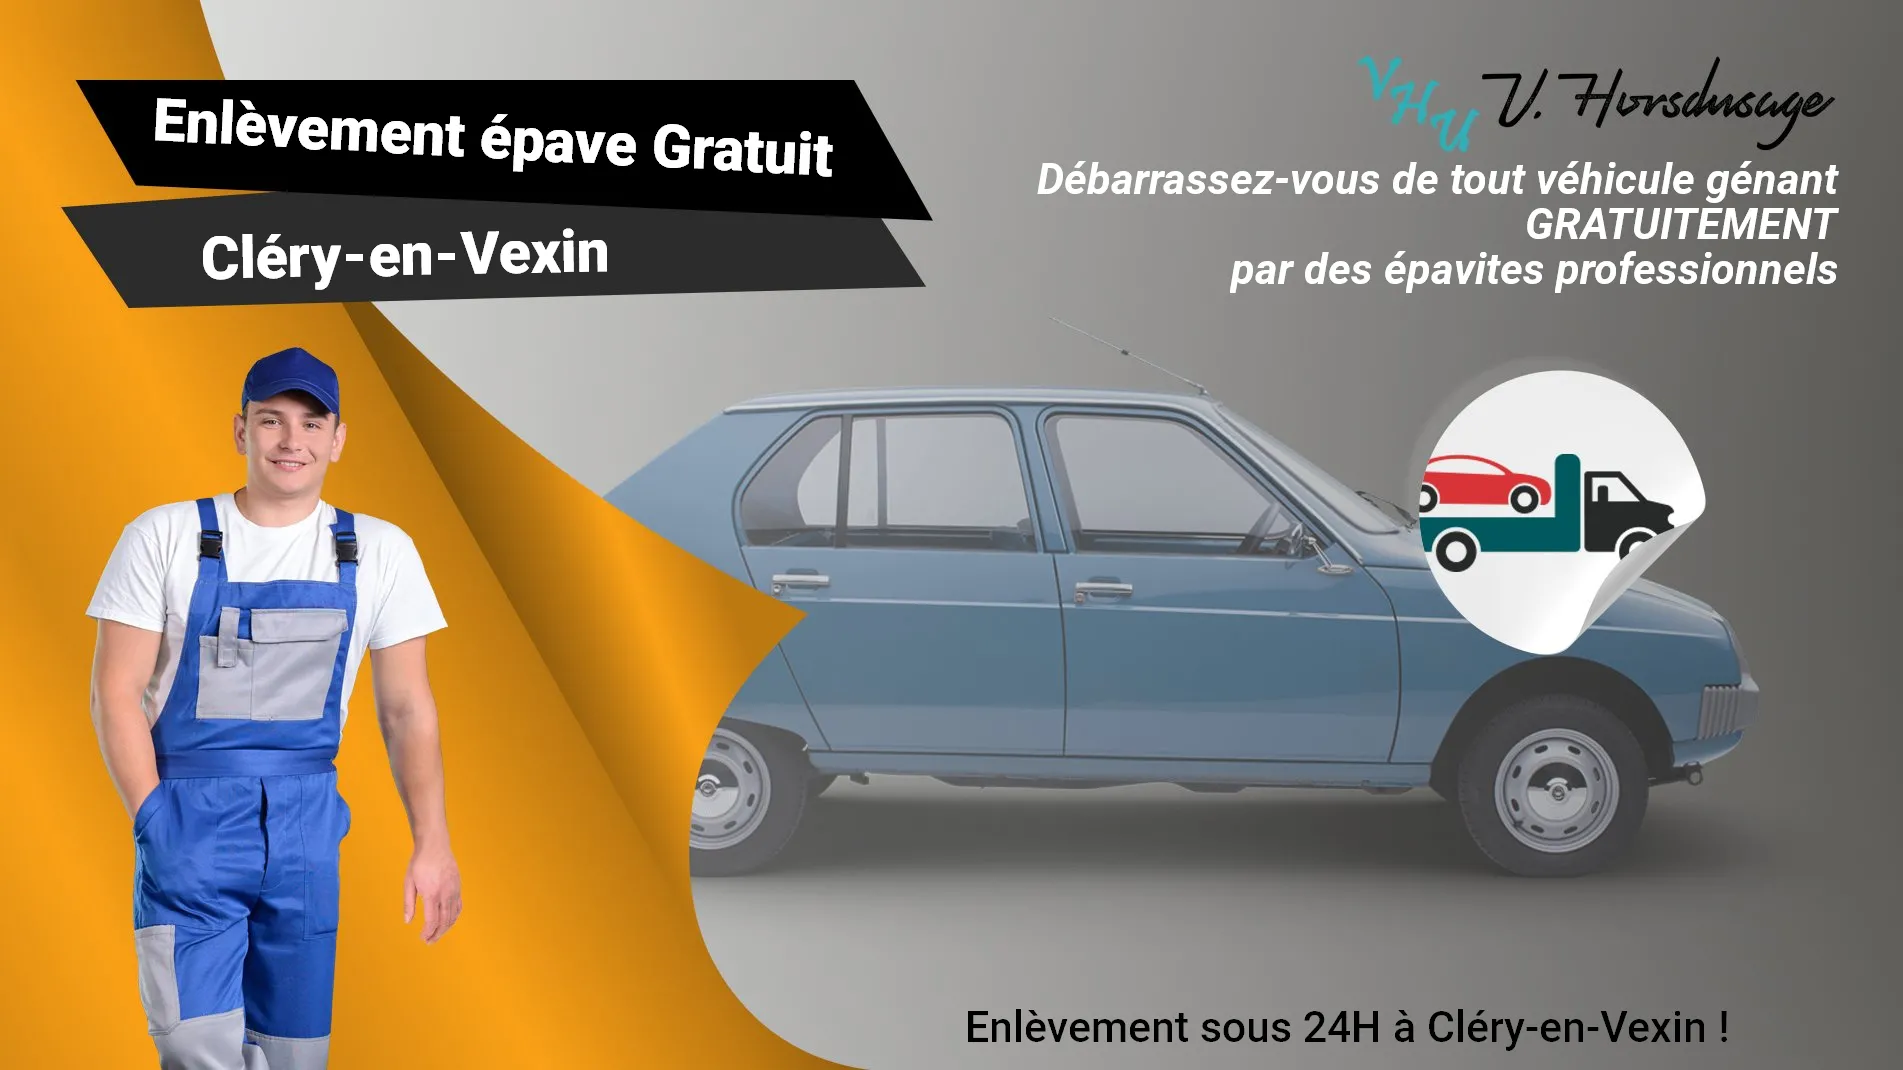 Pour un enlèvement gratuit à Cléry-en-Vexin, contactez nos épavistes agréé VHU